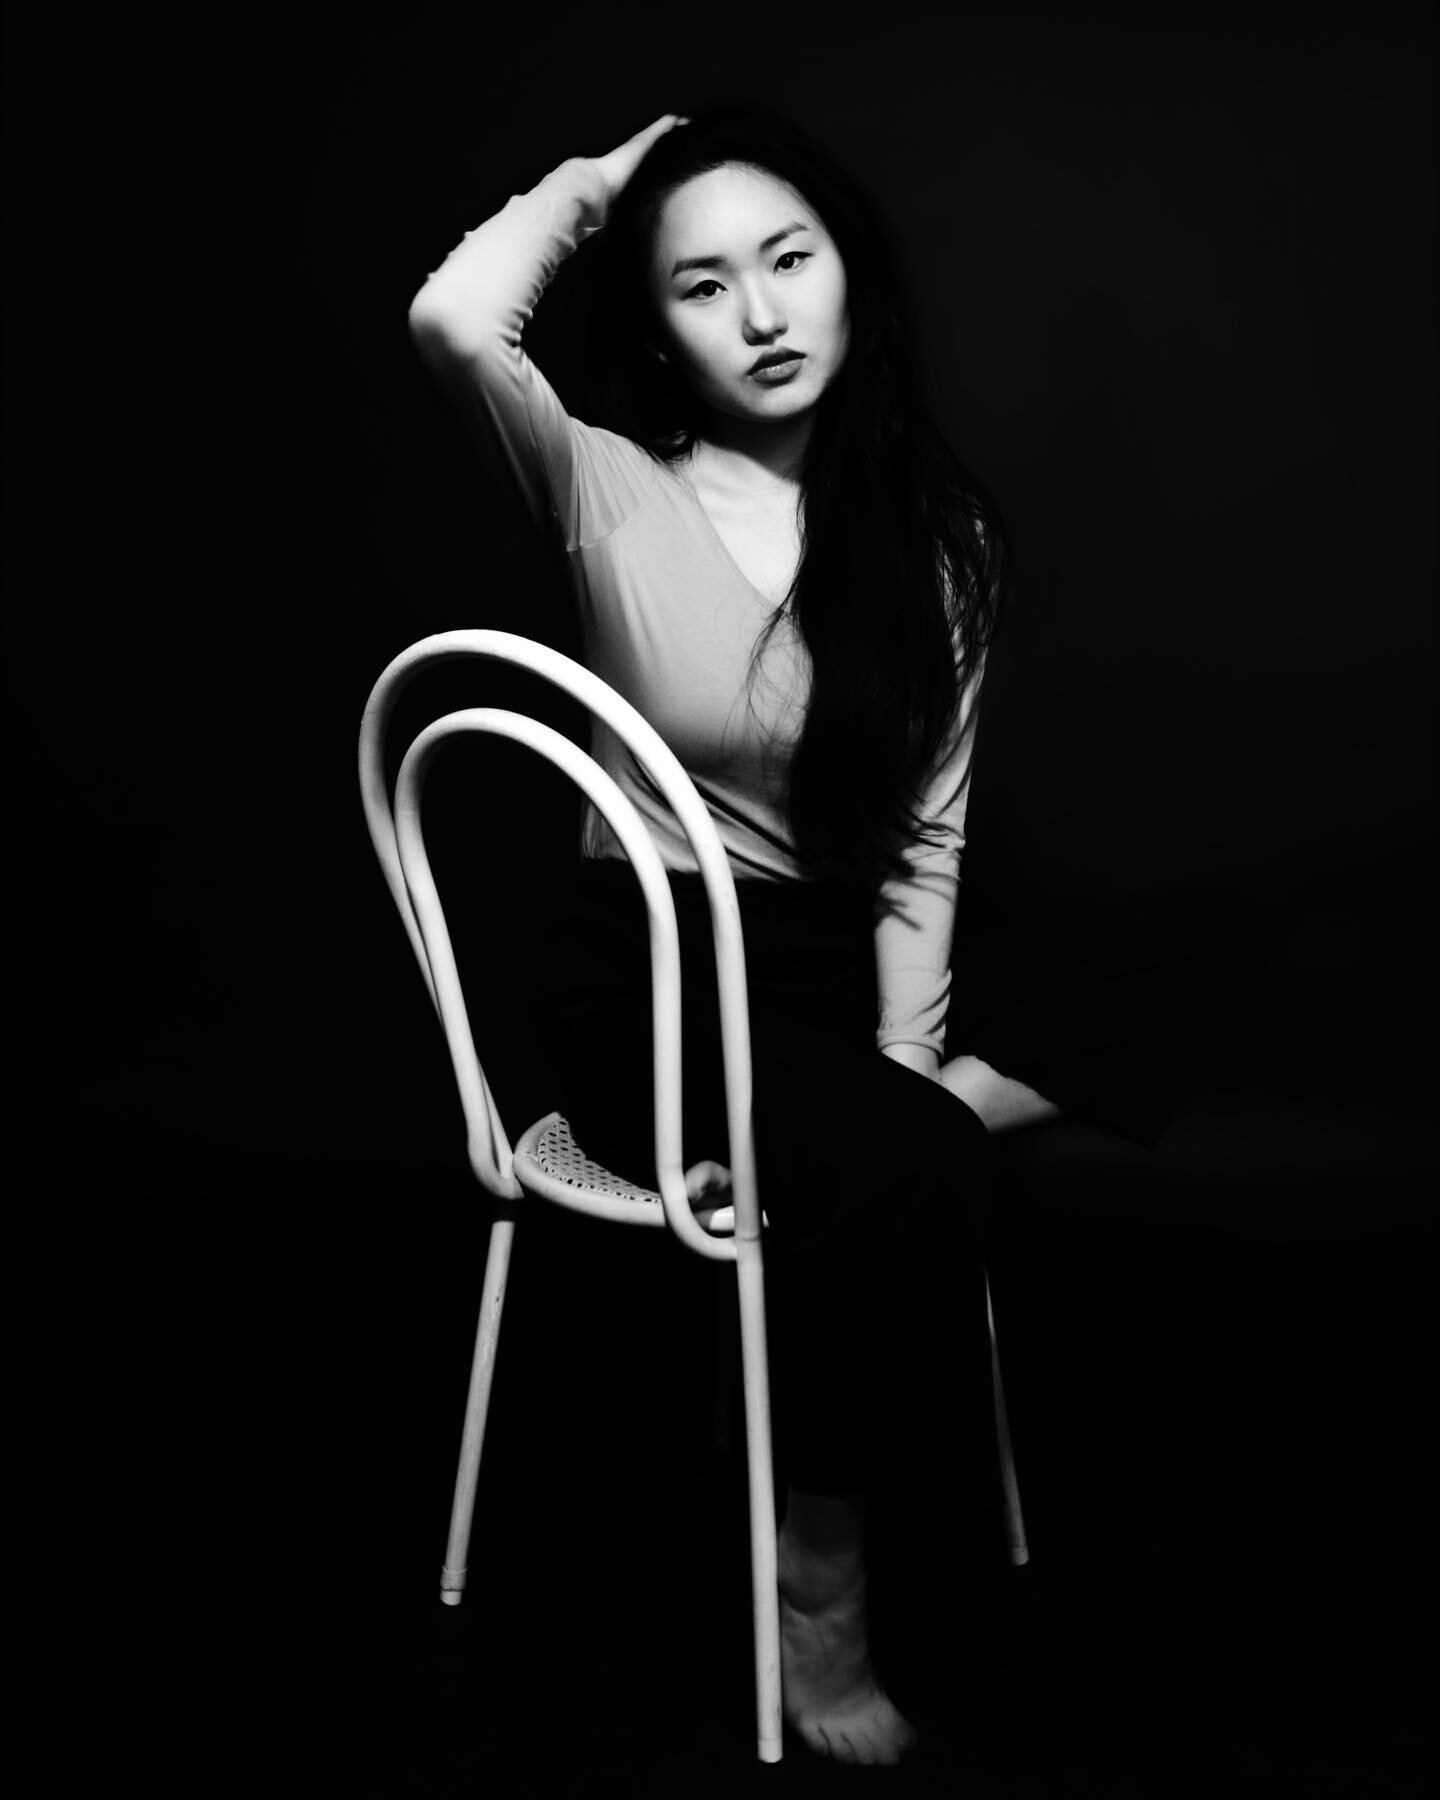 Hyesu pt.2 
🖤🤍
 #blackandwhite

#photography #model  #femaleartist #chairphotography #dortmund #schwerte